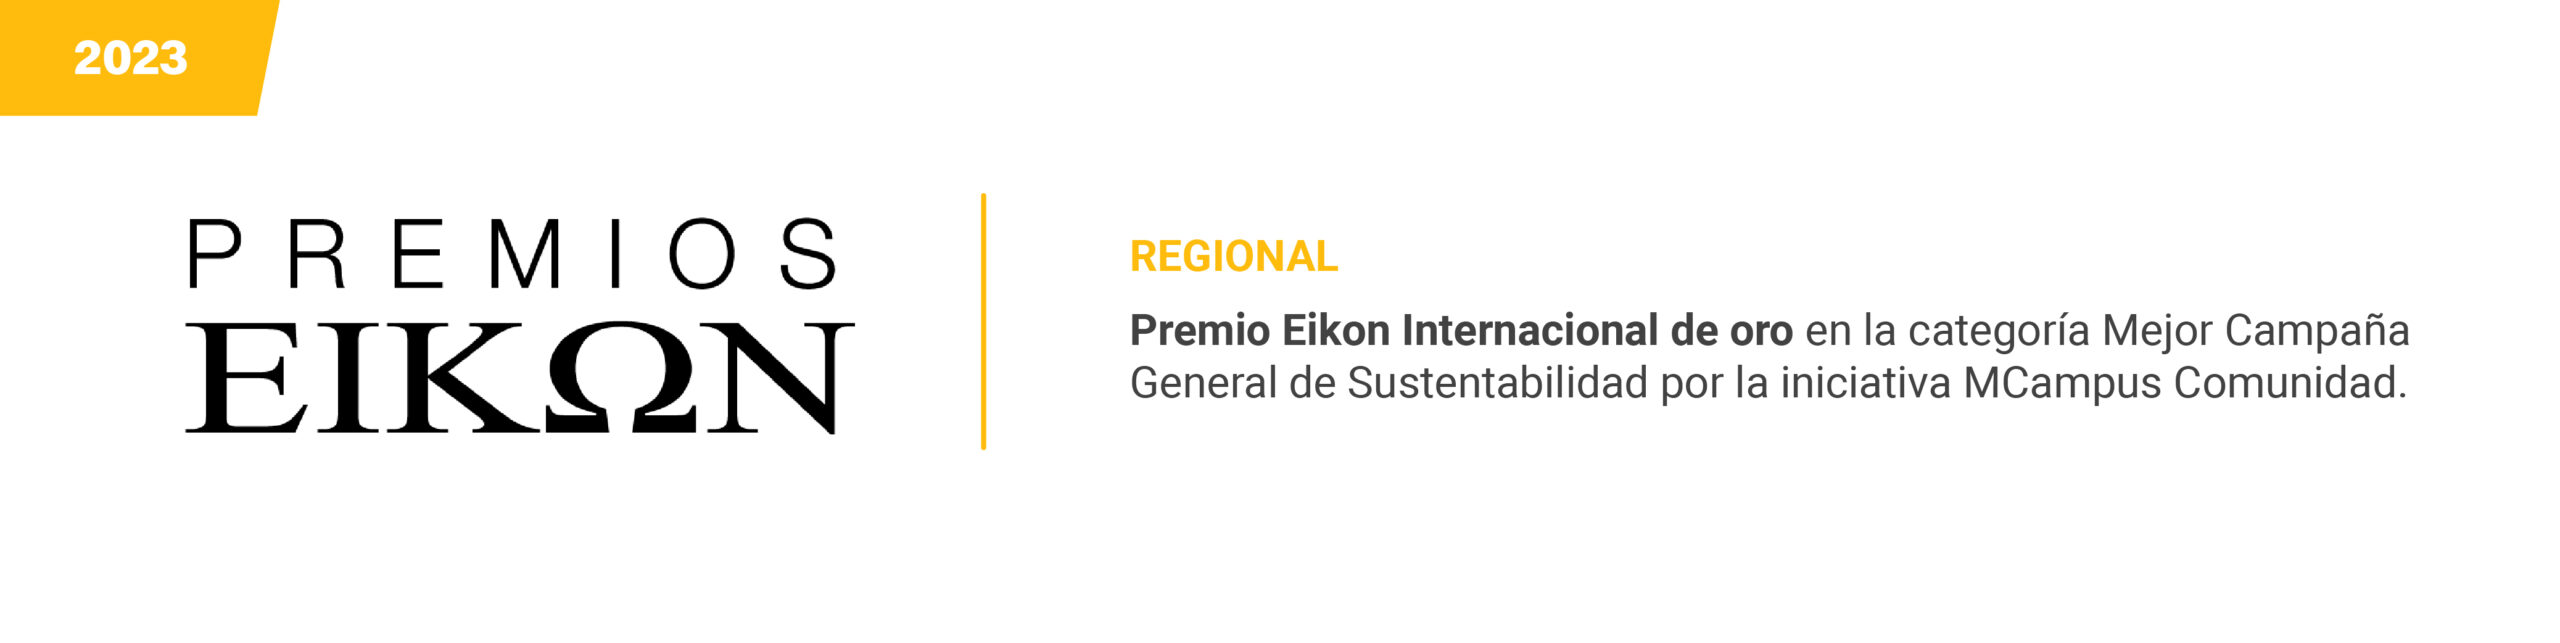 Premios Eikon - Regional